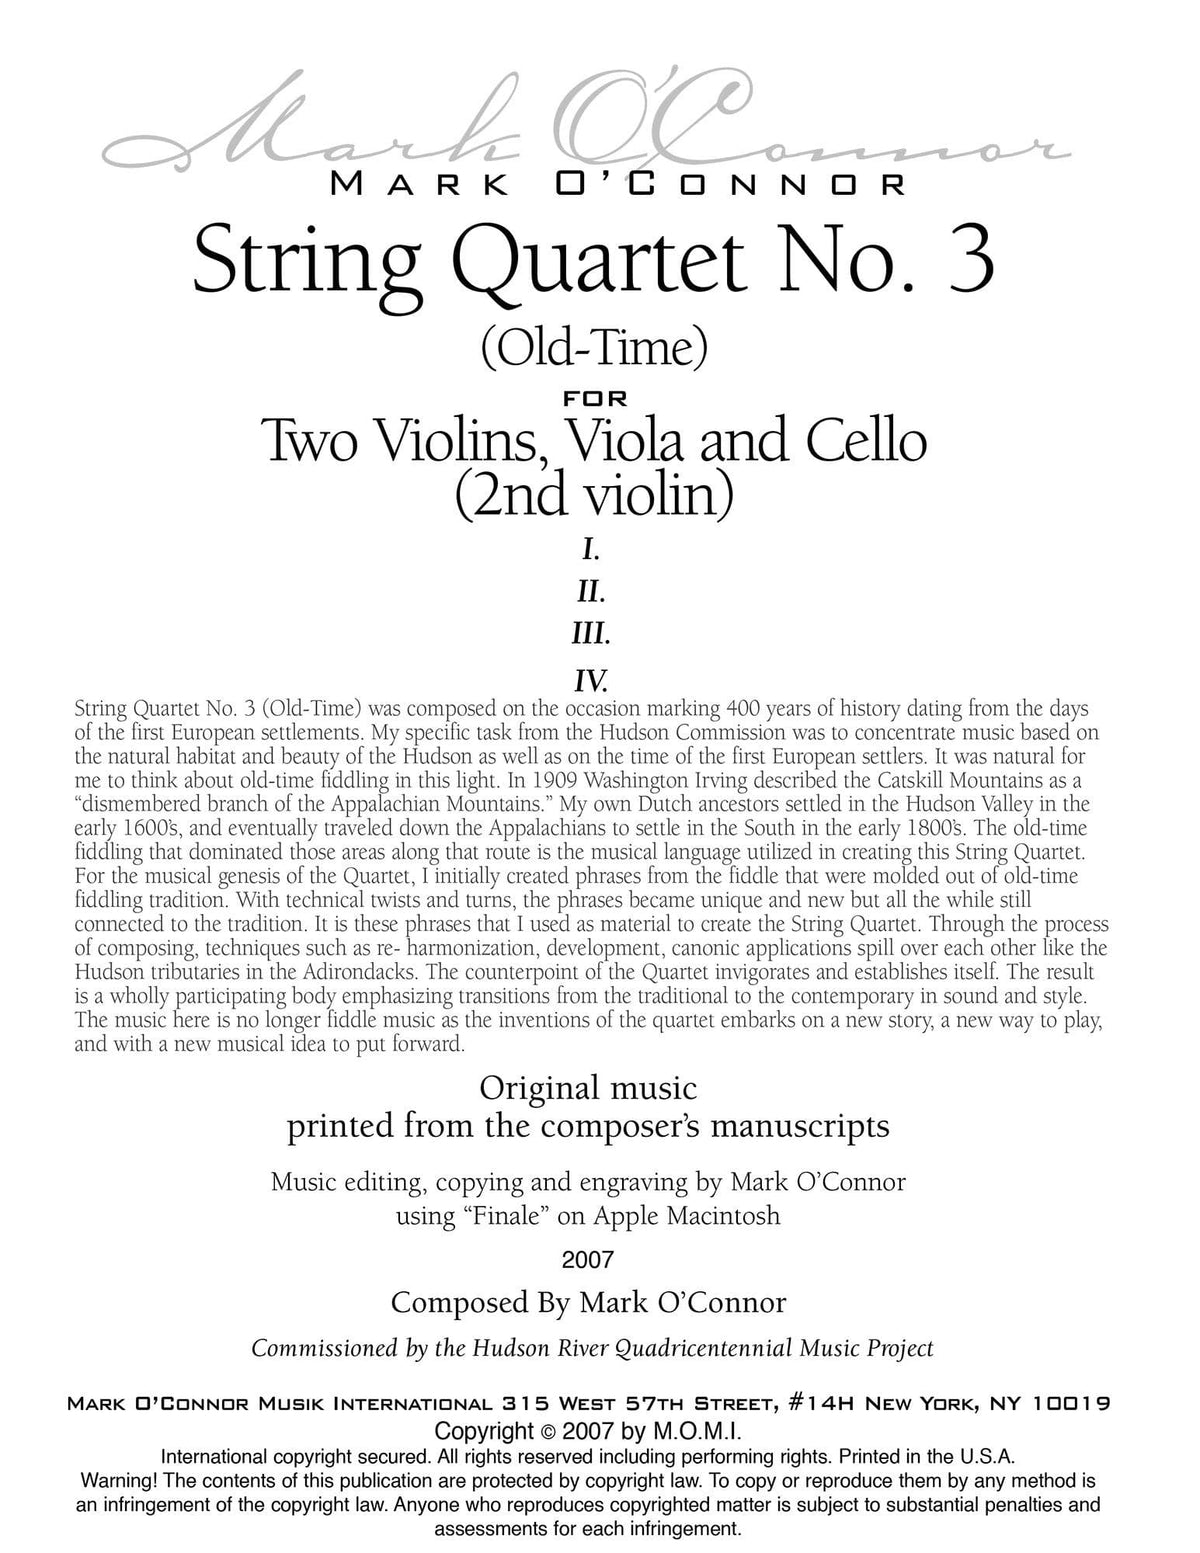 O'Connor, Mark - String Quartet No. 3 (Old-Time) for 2 Violins, Viola, and Cello - Violin 2 - Digital Download